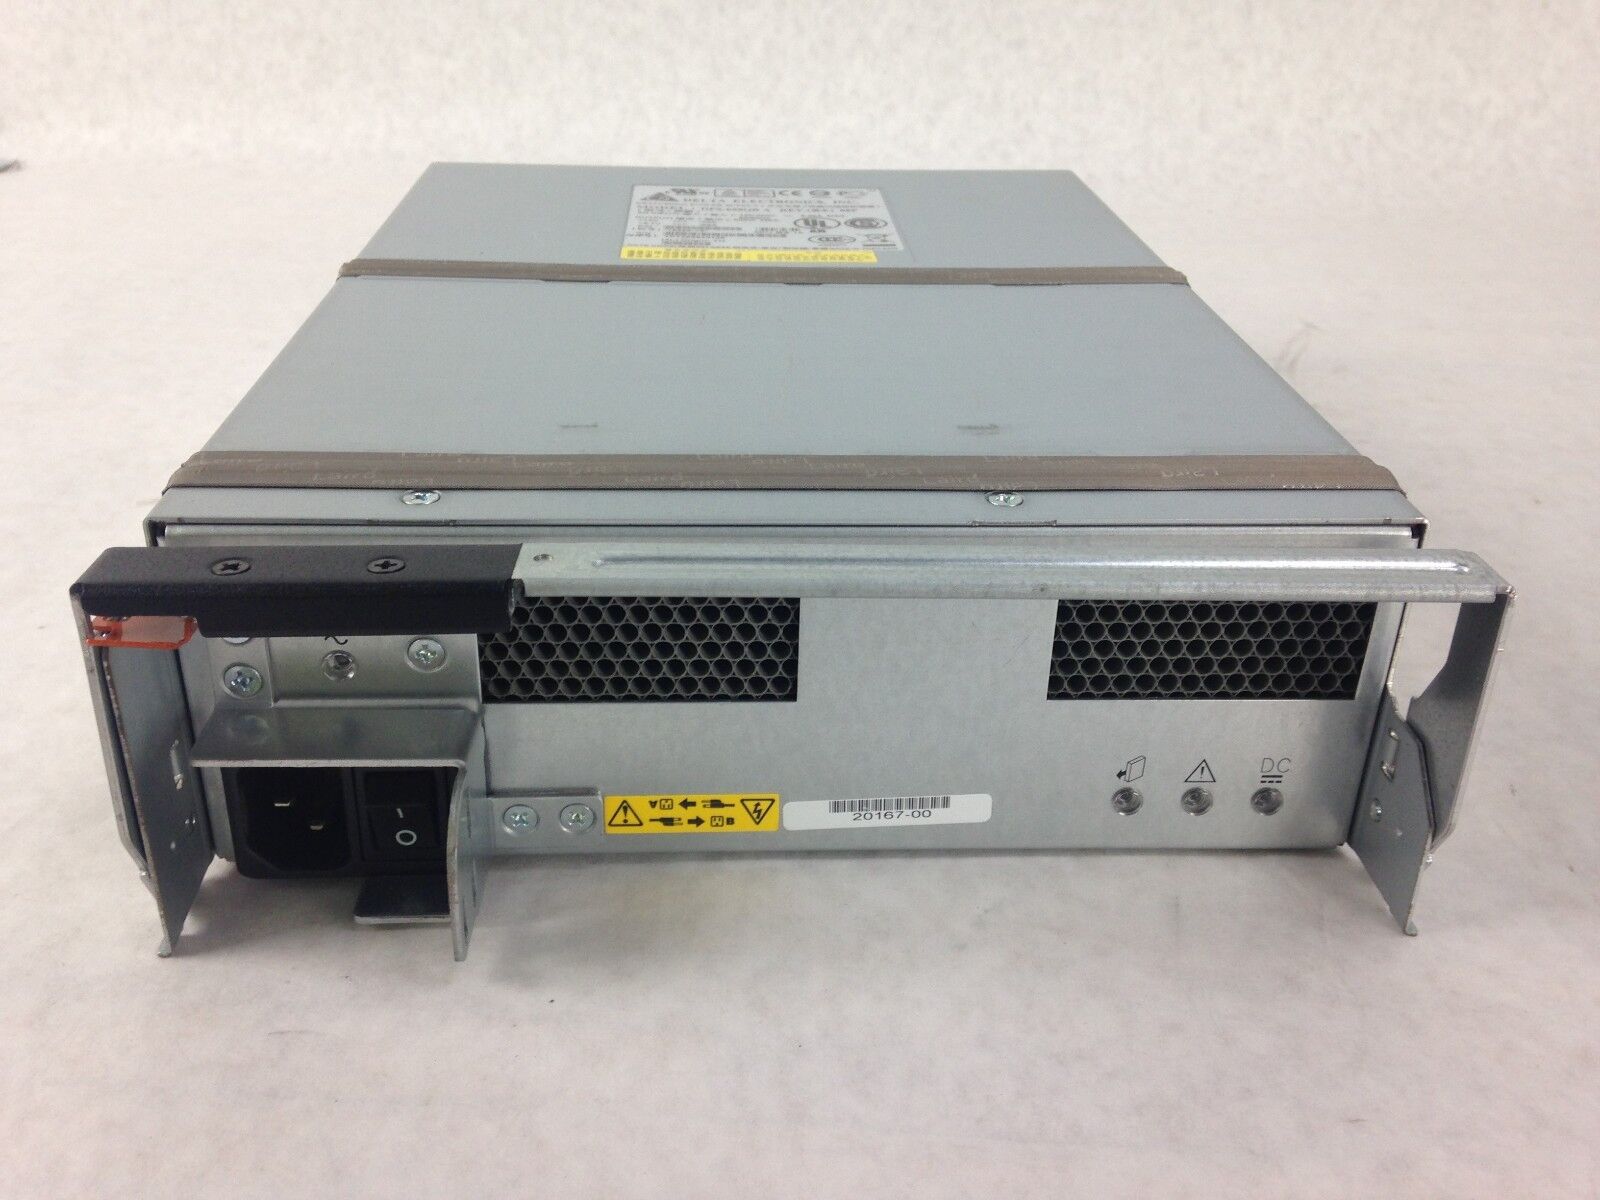 IBM FRU 42D3346 Power Supply Delta DPS-600QB A 600W PSU 42D3345 15240-12